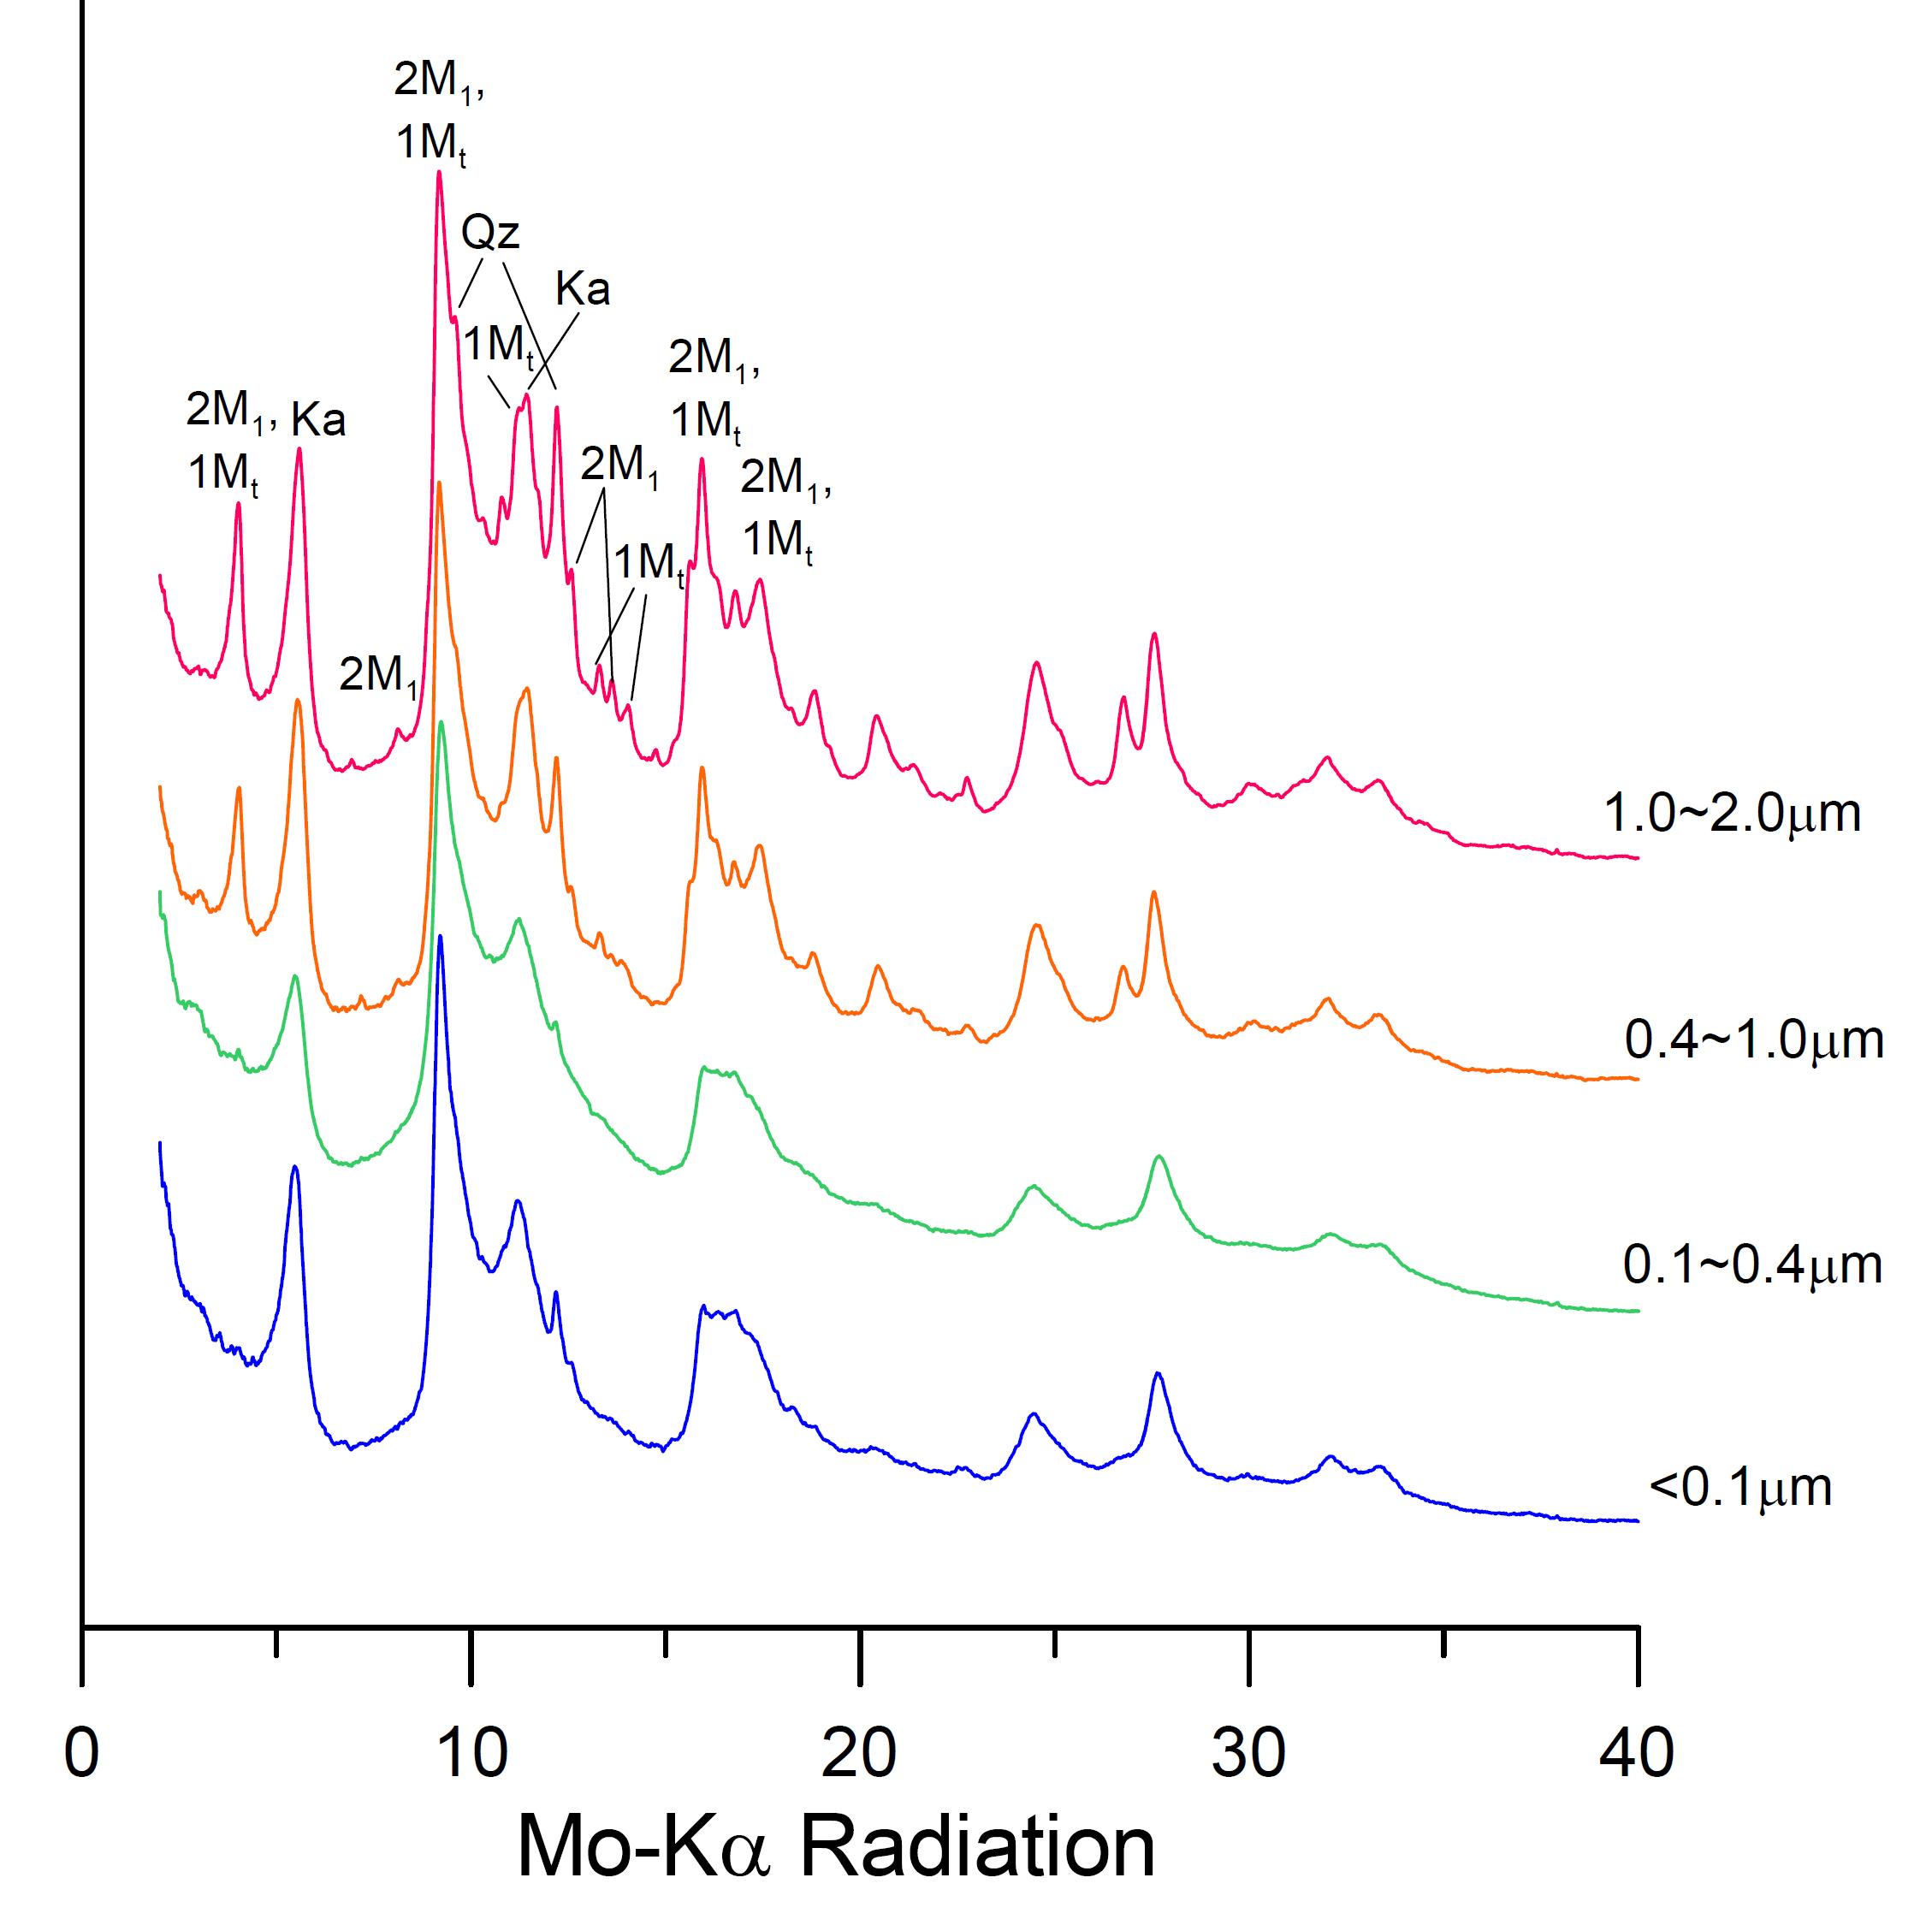 홍성일원 당진단층 입도분리 시료에 대한 부정방위 X-선 회절분석결과. Qz: quartz, 2M1; 2M1 illite, 1Mt; 1Mtrans polytype, Ka; kaolinite.